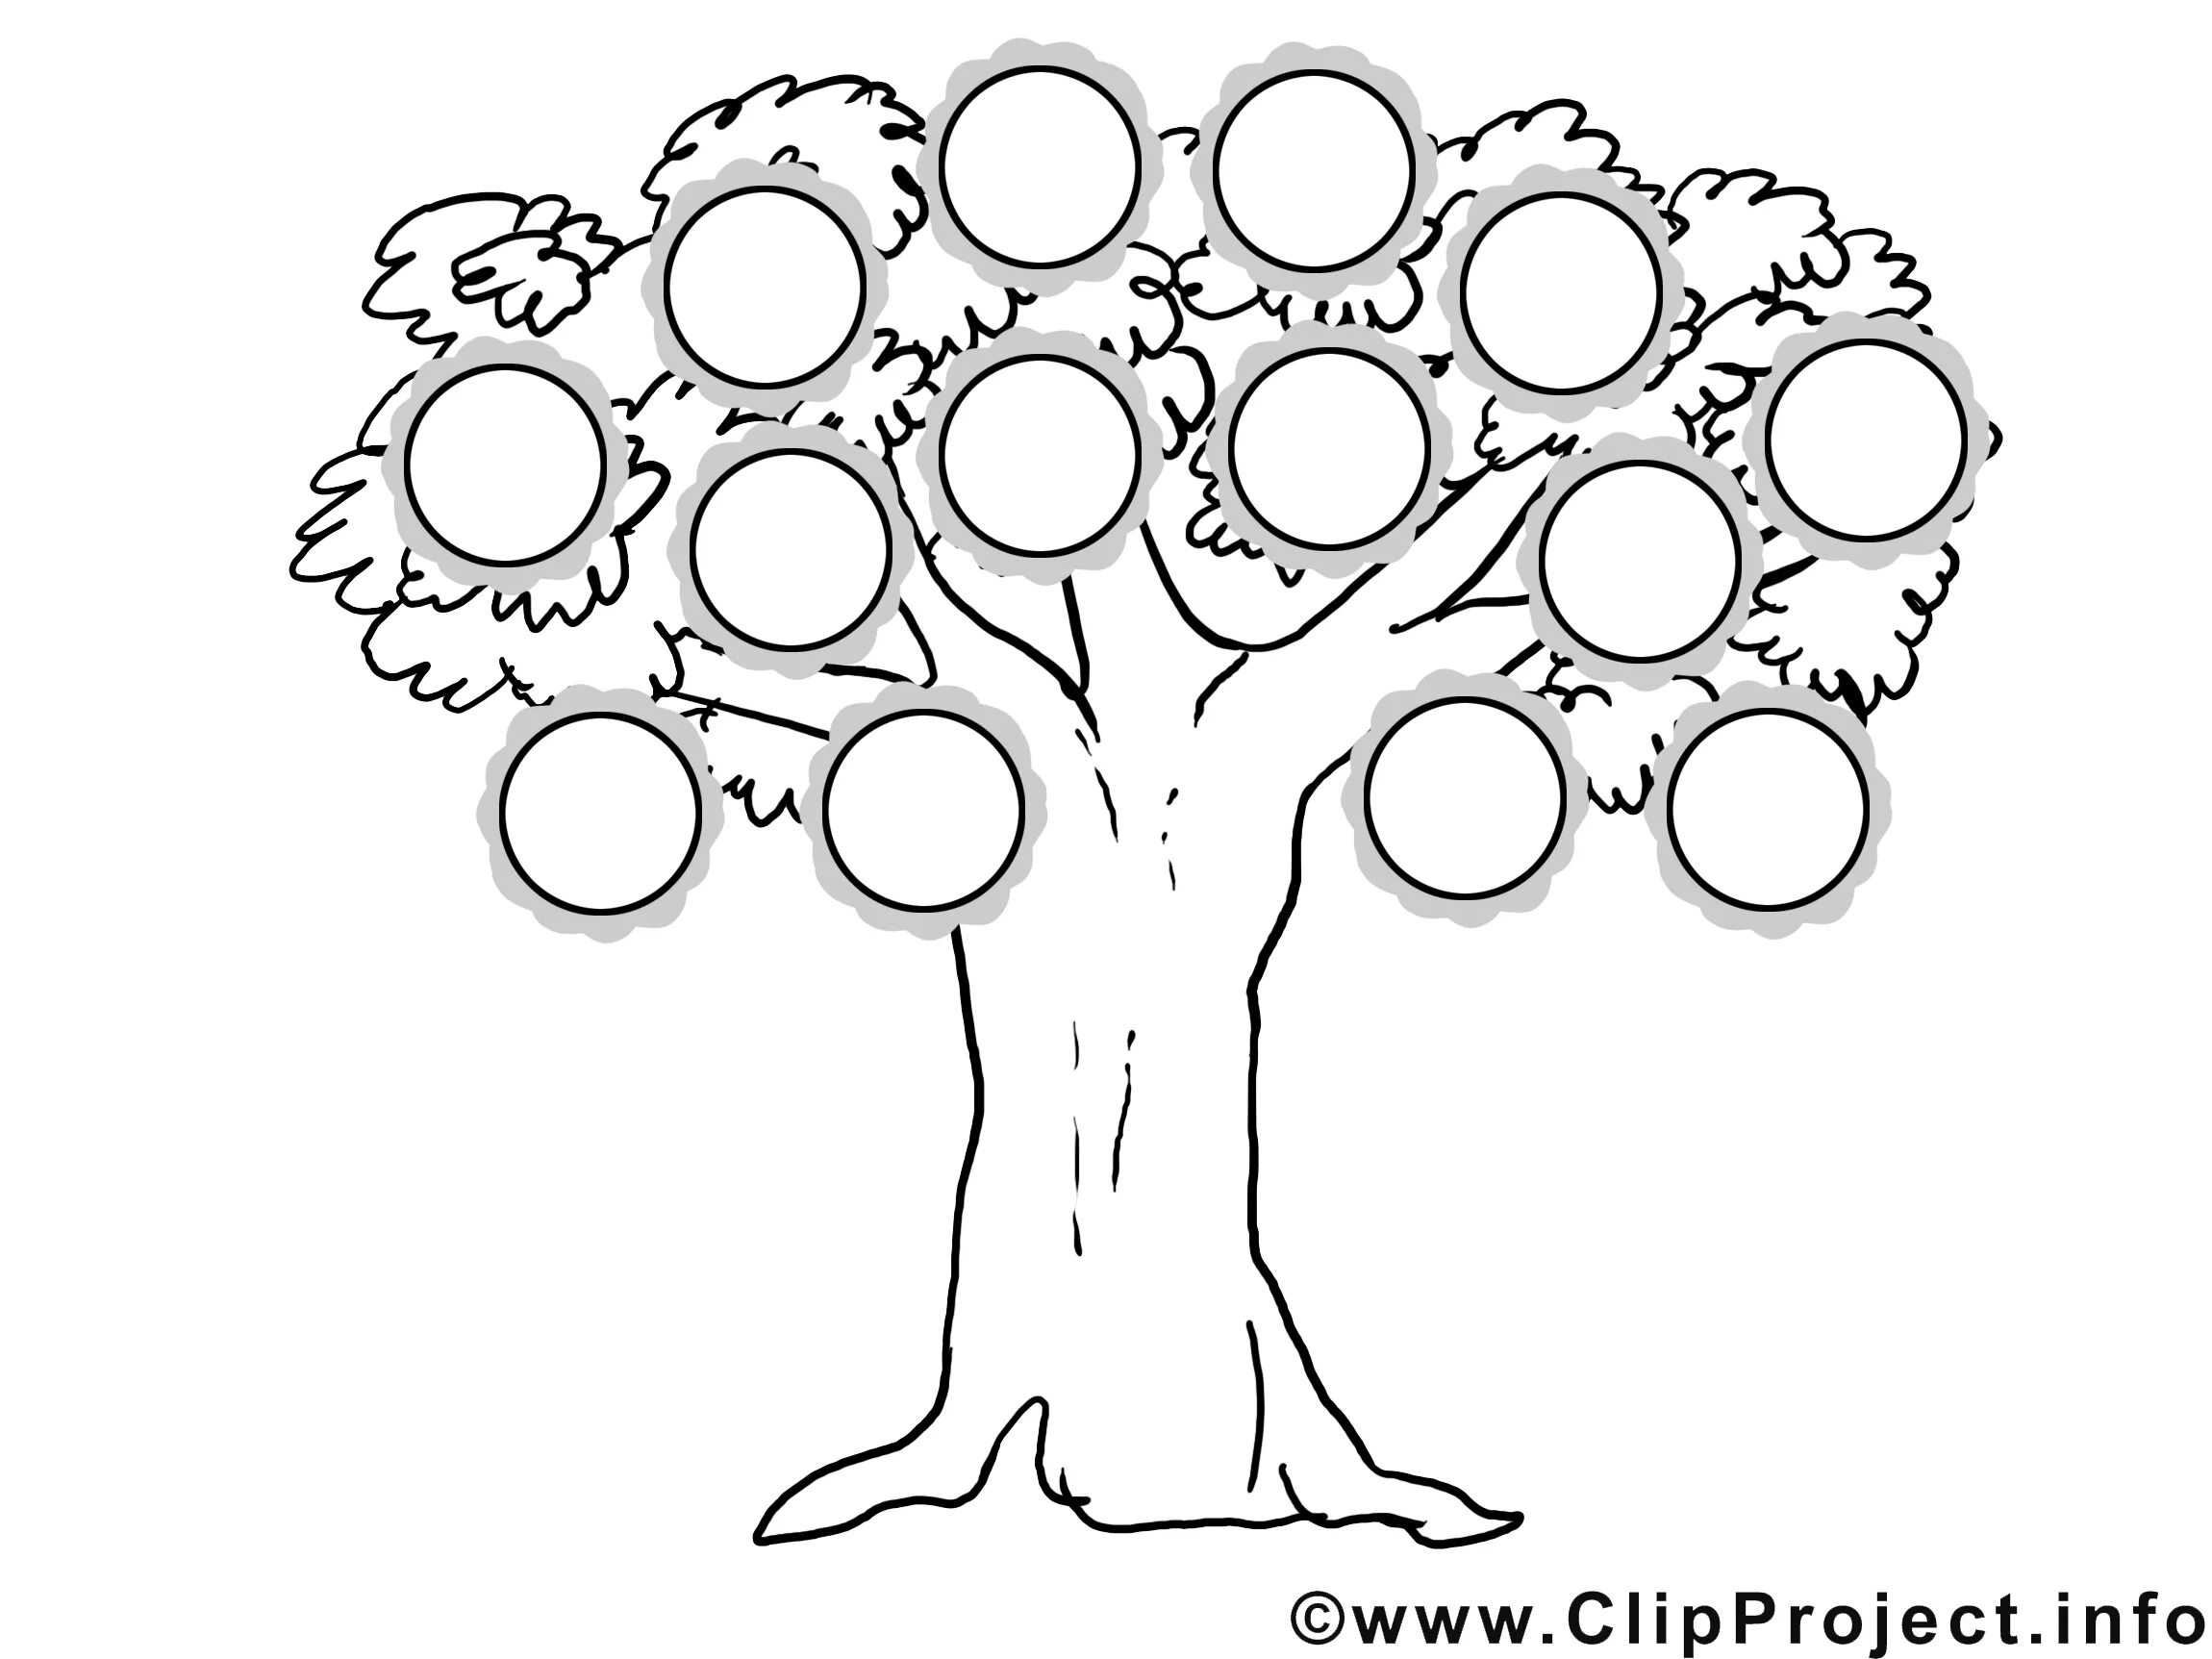 Генеалогическое дерево шаблон. Семейное дерево раскраска. Генеалогическое дерево рисунок. Дерево для родословной раскраска. Древо семьи 2 класс шаблон